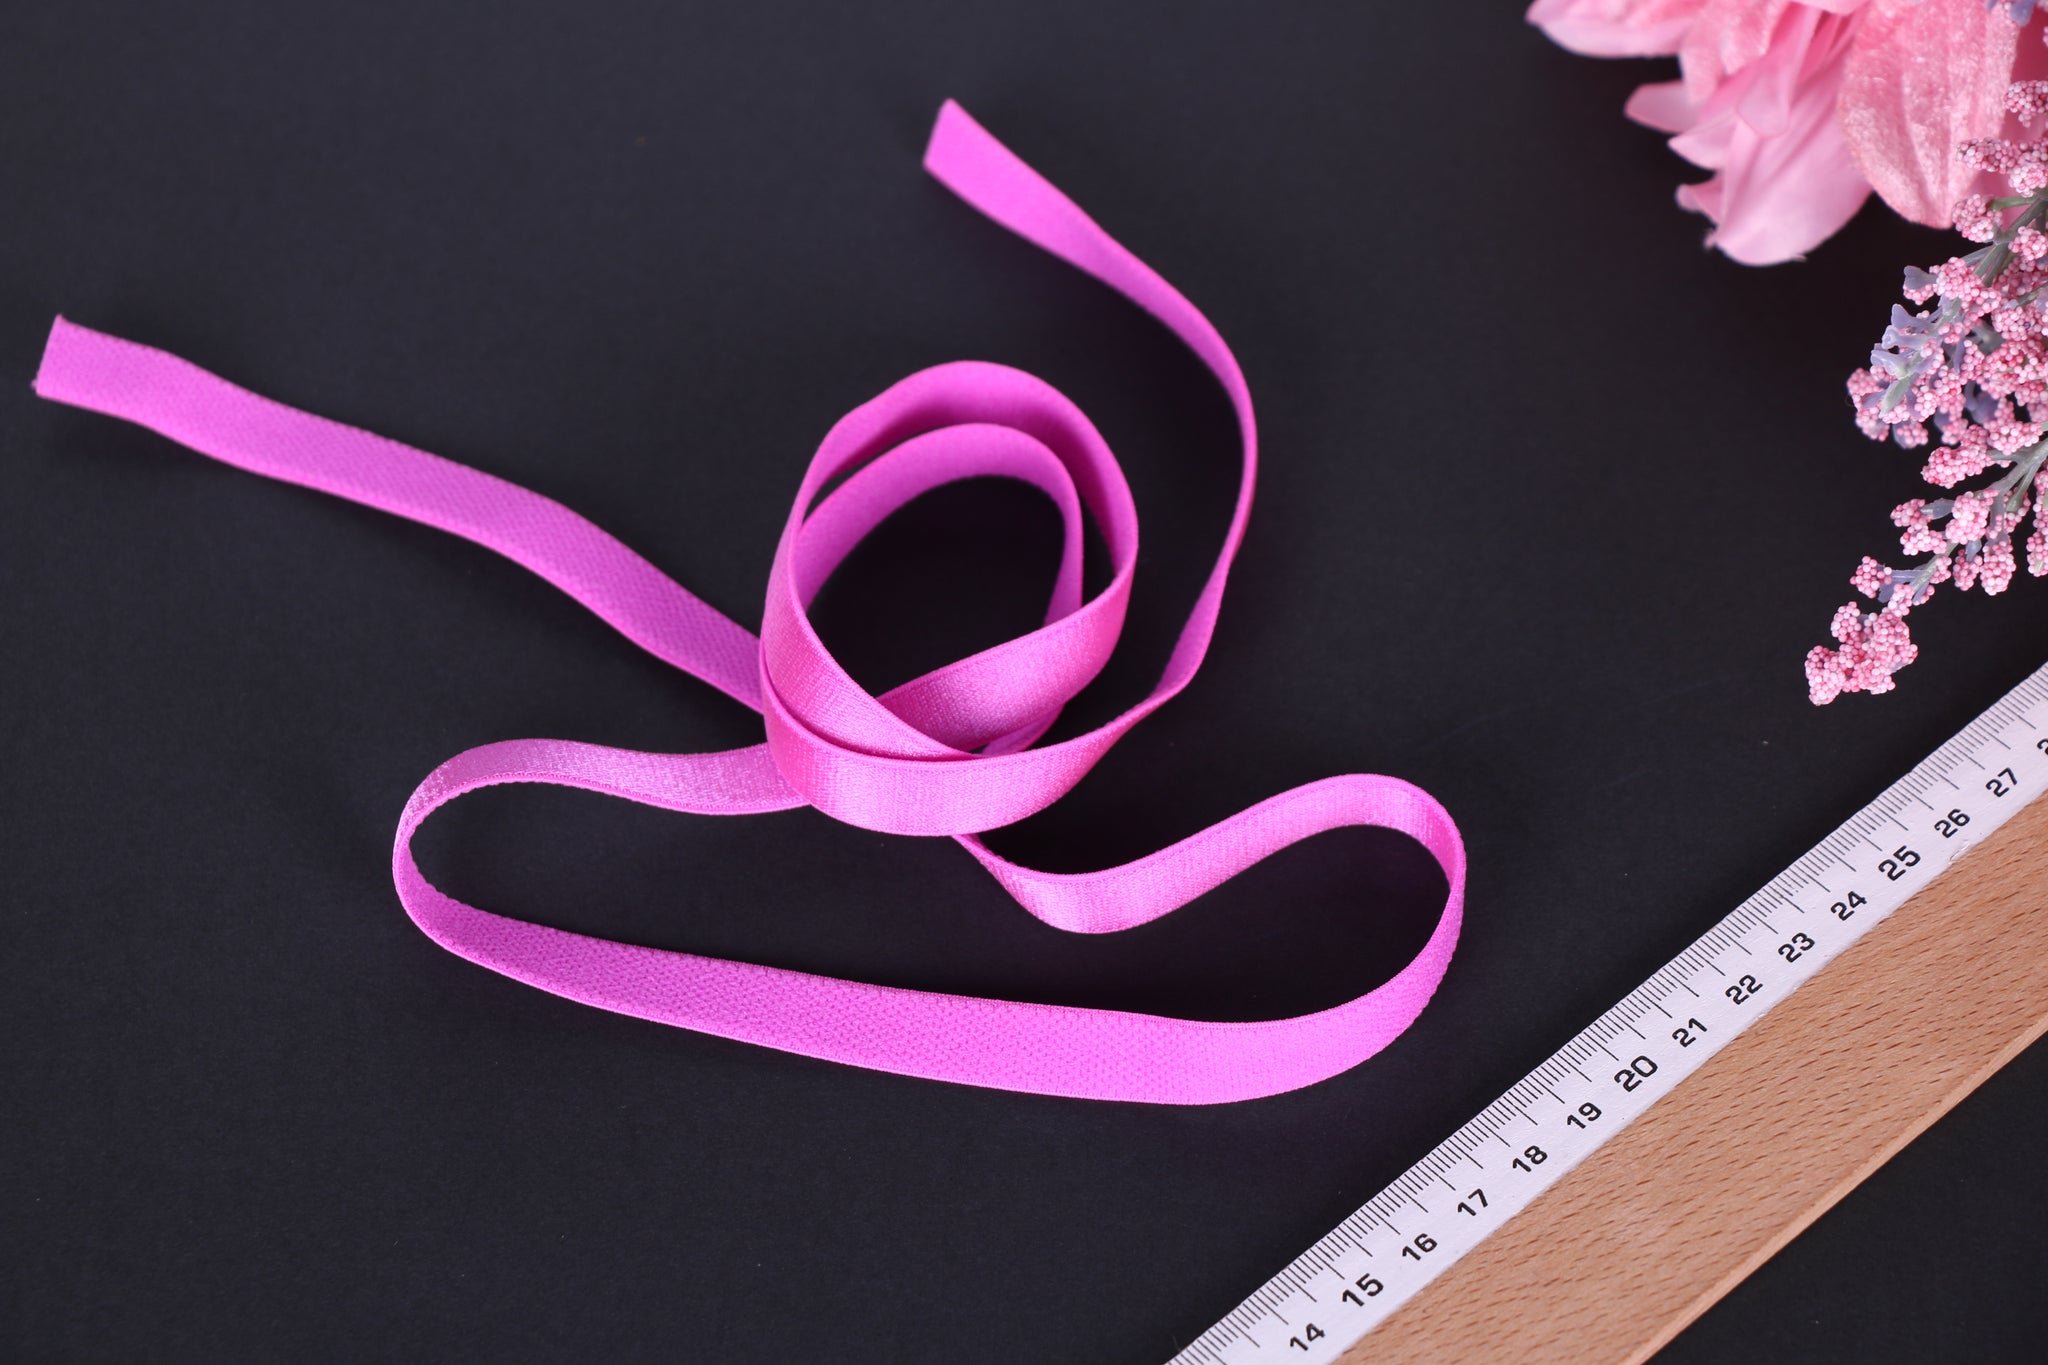 elástico magenta para sujetador 12mm. 1/2" magenta bra strap elastic